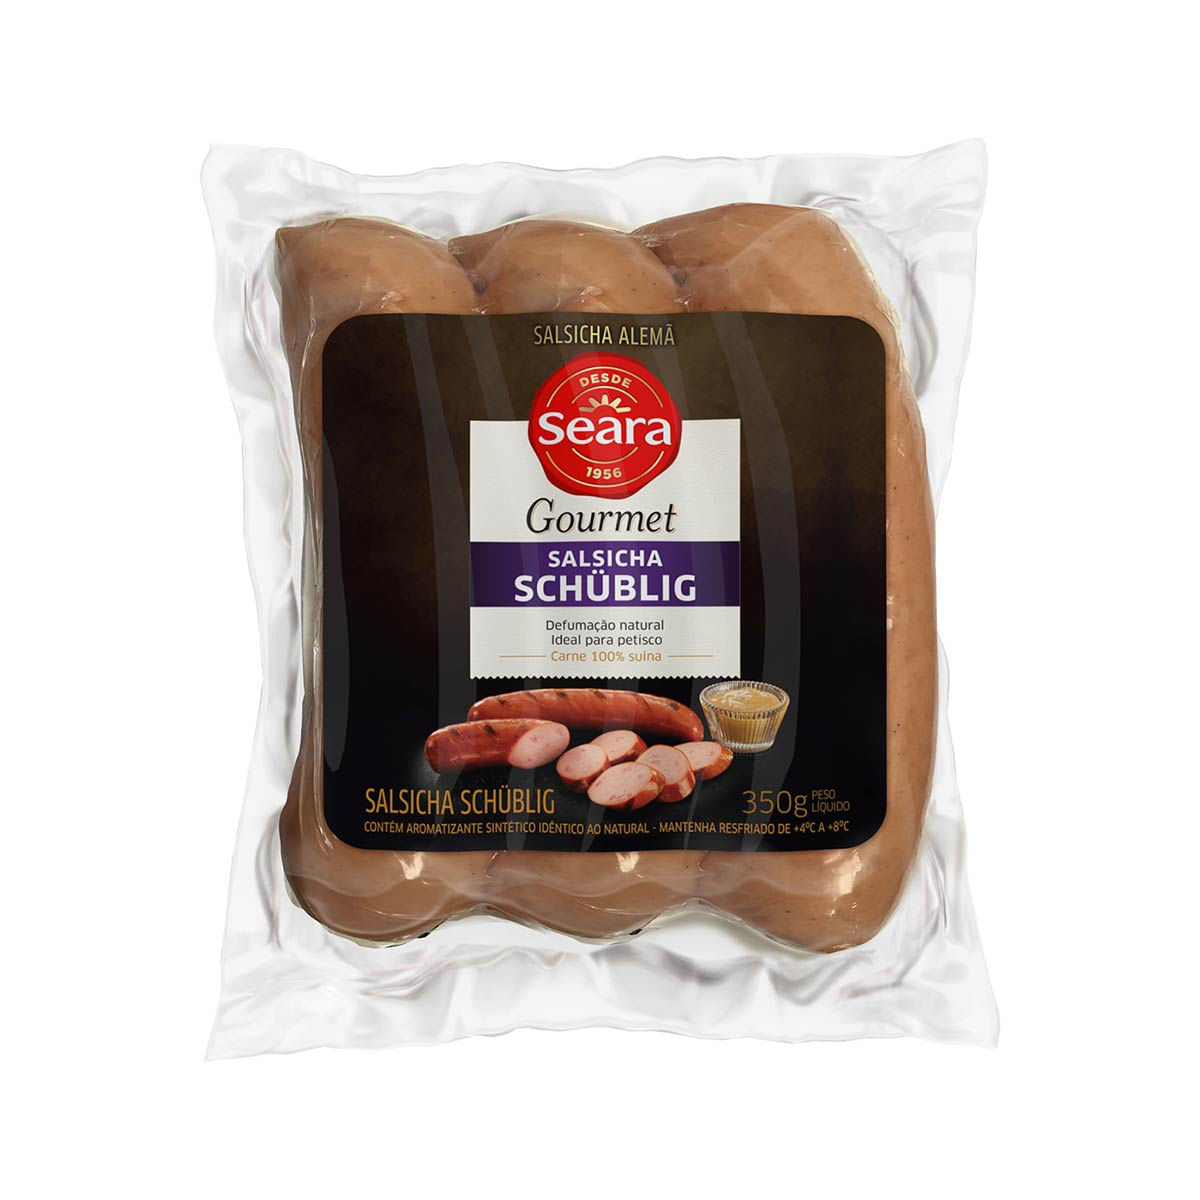 salsicha-schublig-seara-gourmet-250-g-1.jpg